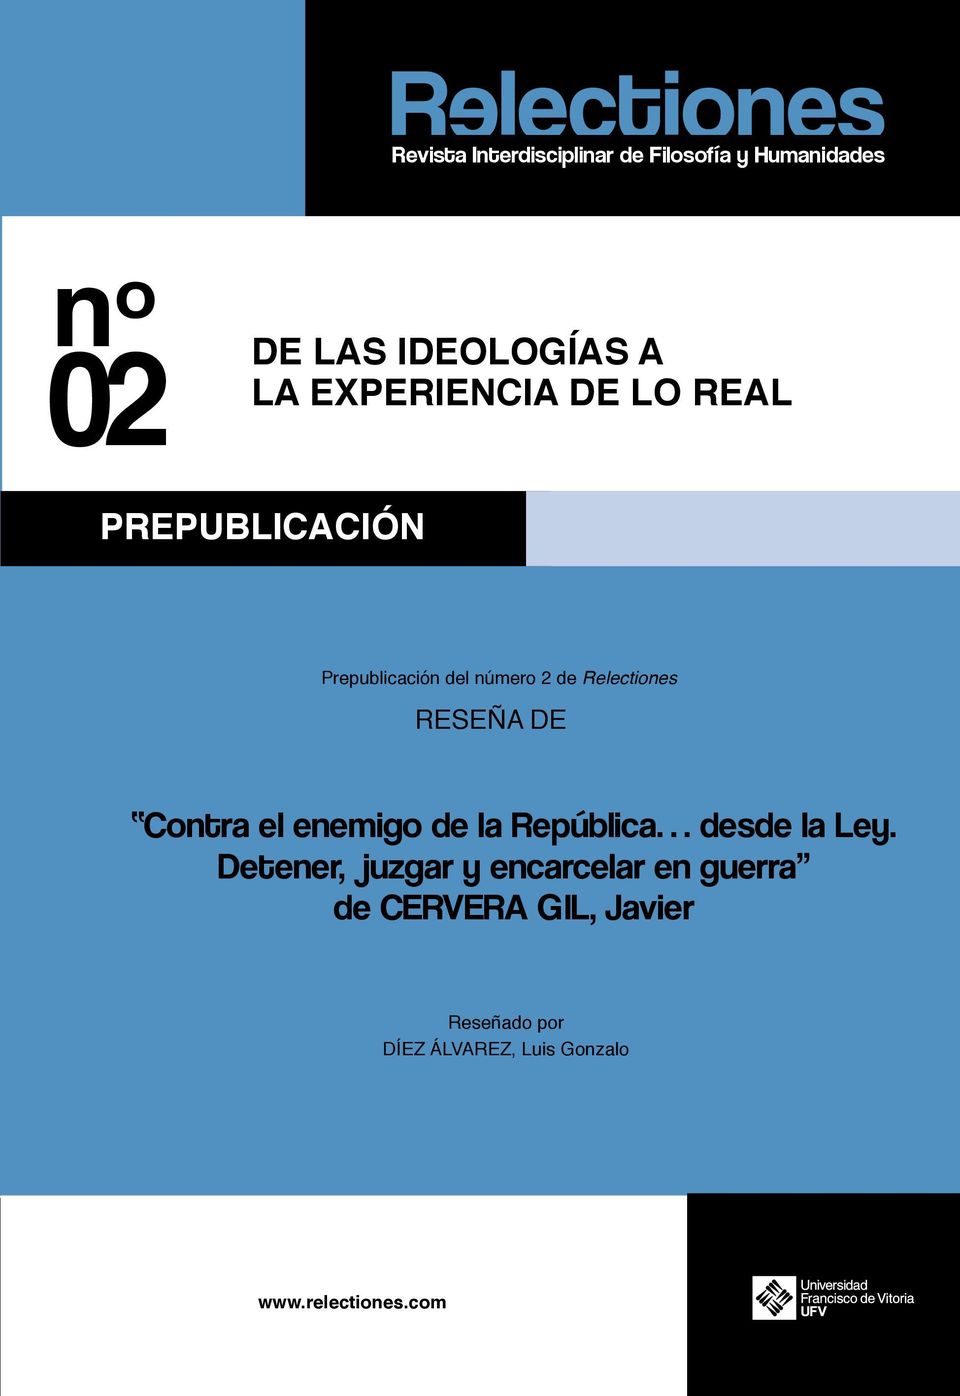 Relectiones RESEÑA DE Contra el enemigo de la República desde la Ley.